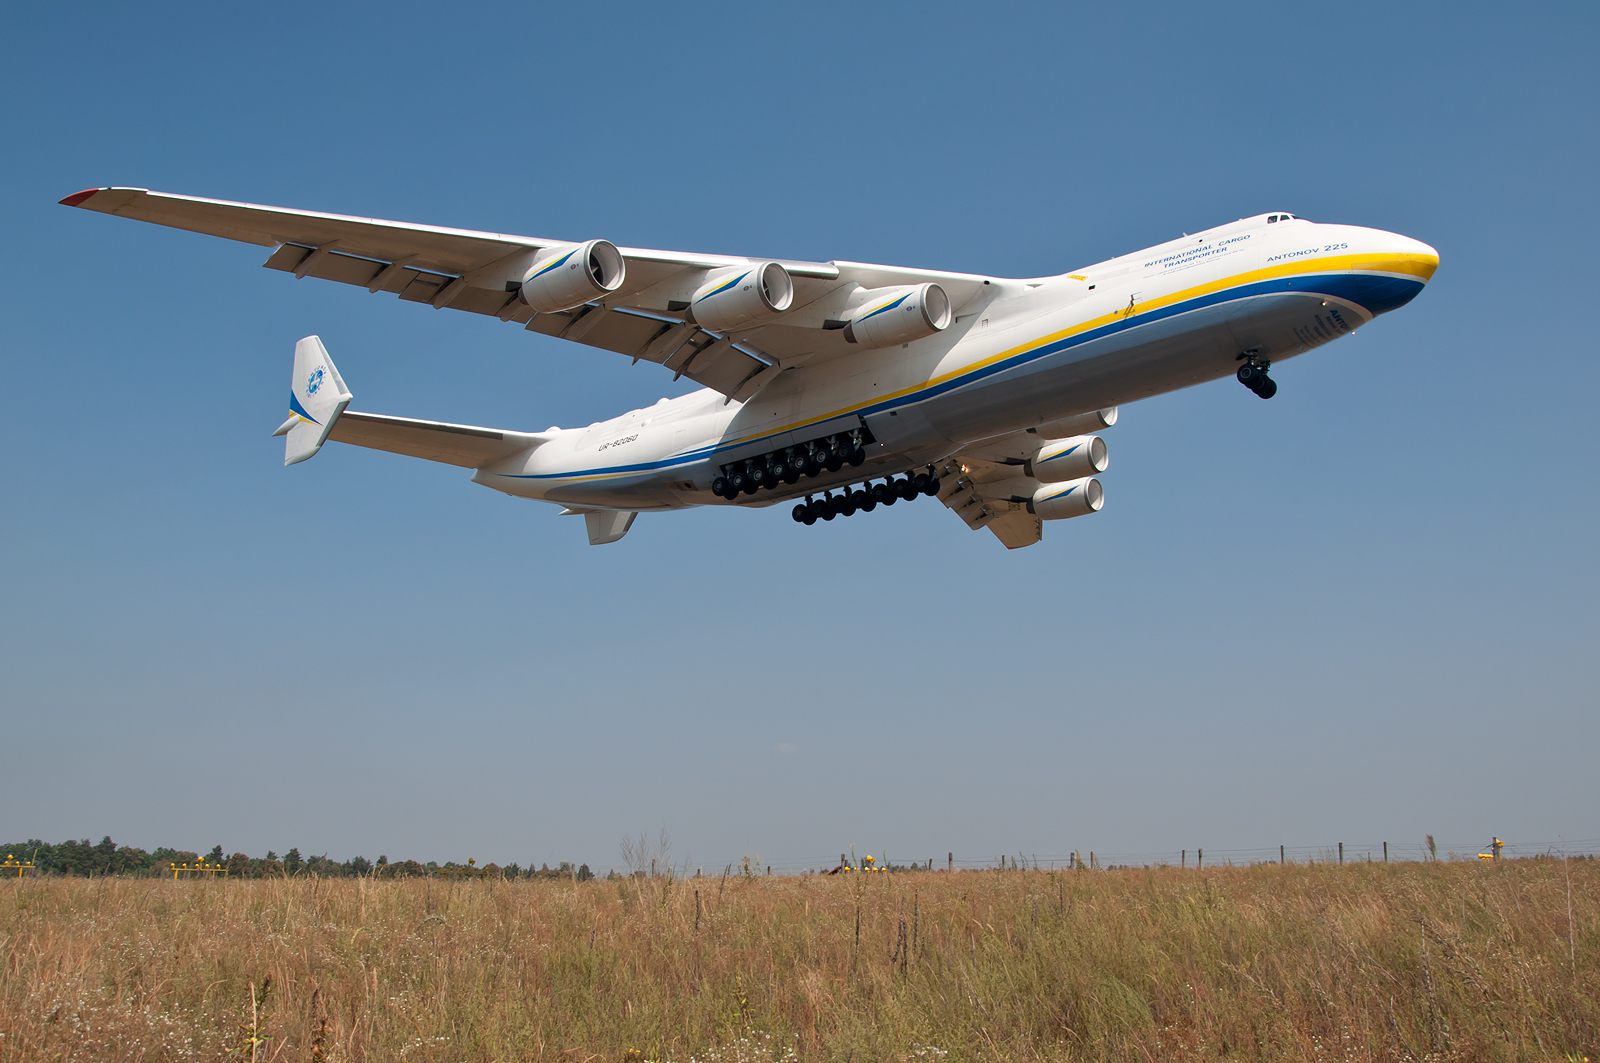 乌克兰巨无霸飞机满世界圈钱货舱塞进160吨货物频繁起降